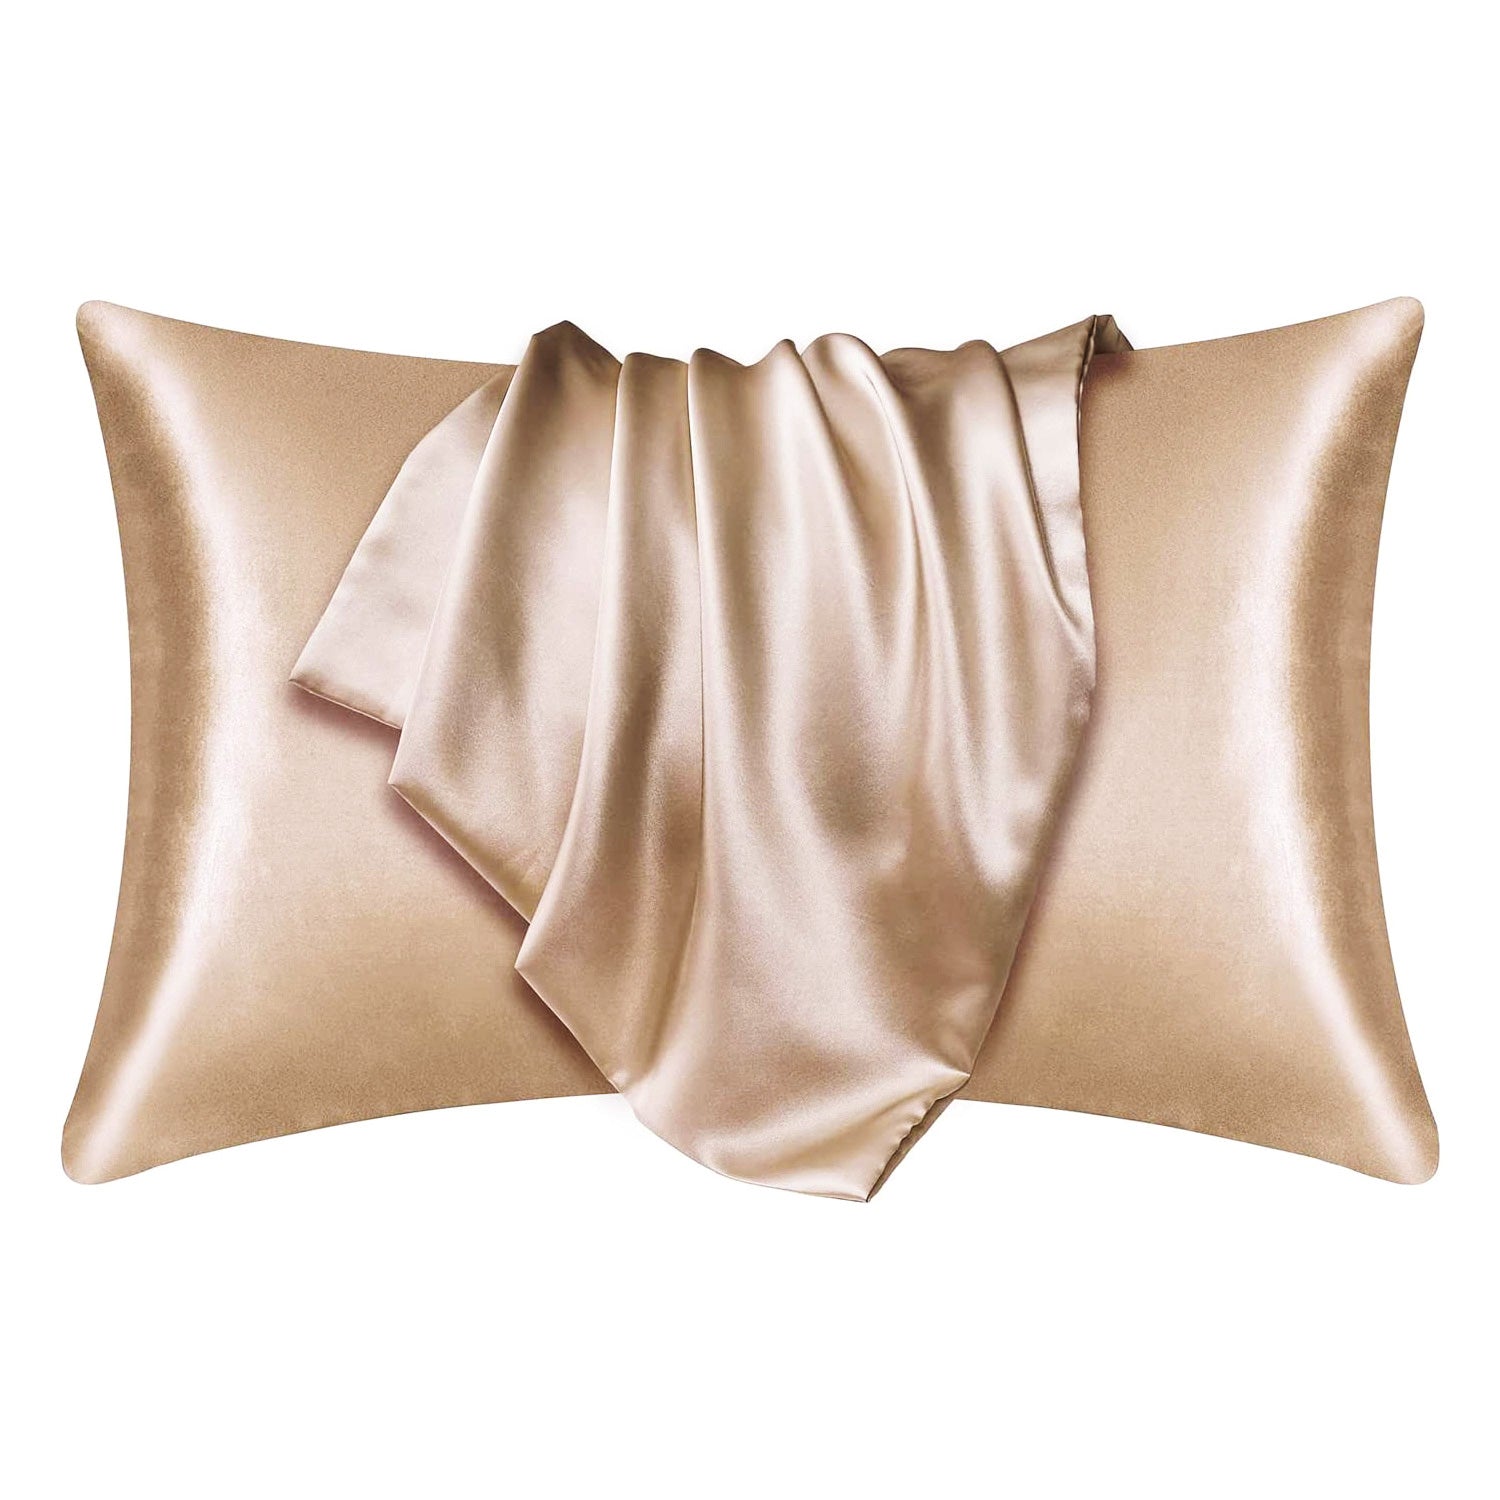 Satin-Kissenbezug Helles Khaki 60 x 70 cm Standard-Kissengröße - Silky satin pillowcase